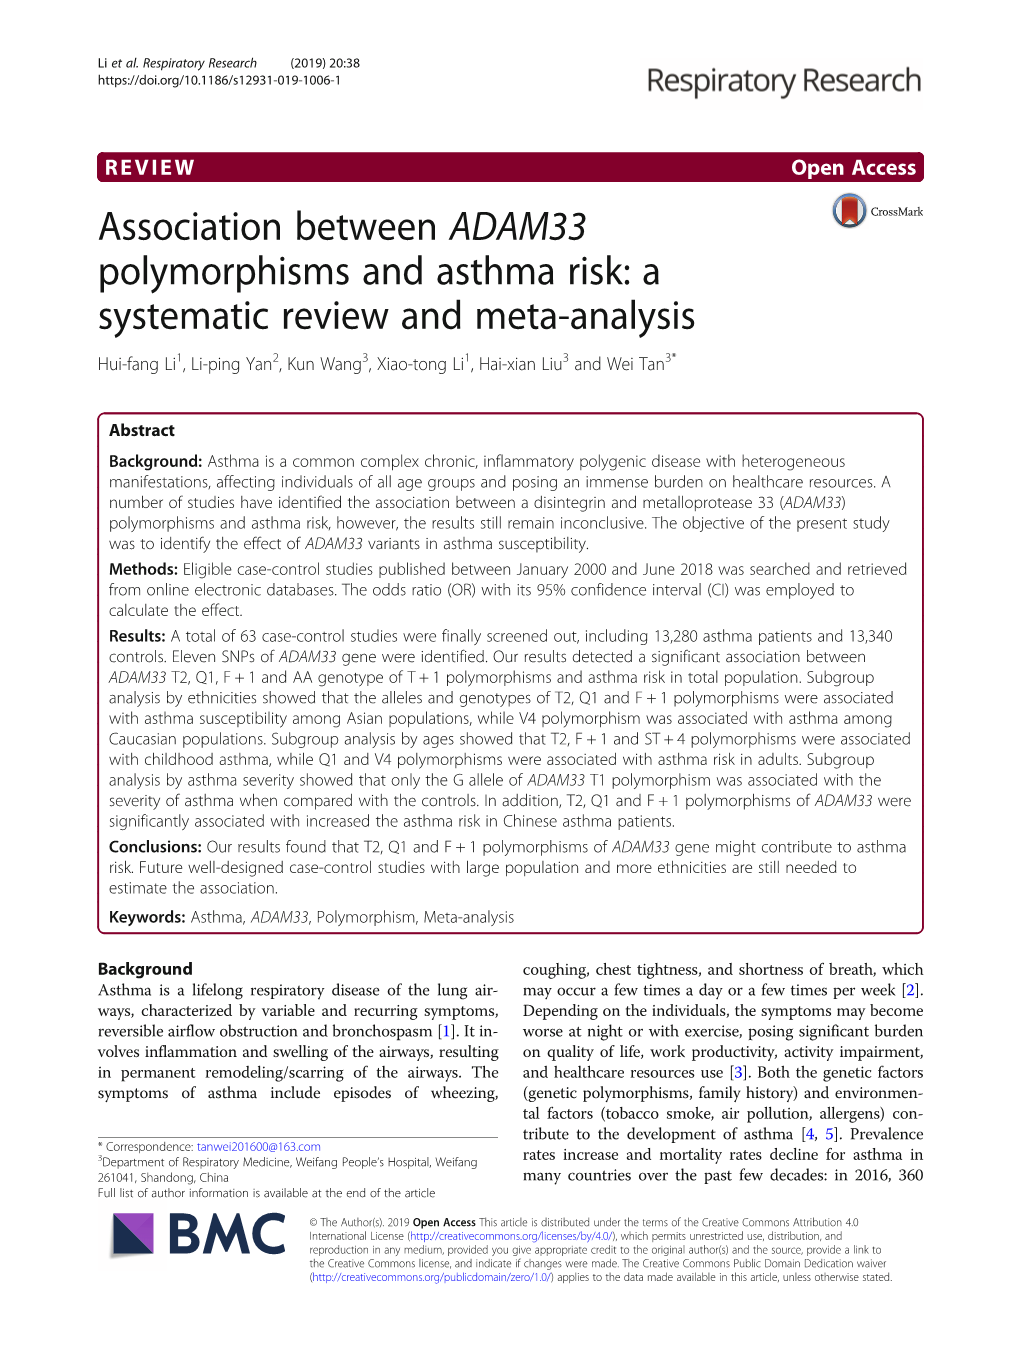 Association Between ADAM33 Polymorphisms and Asthma Risk: A